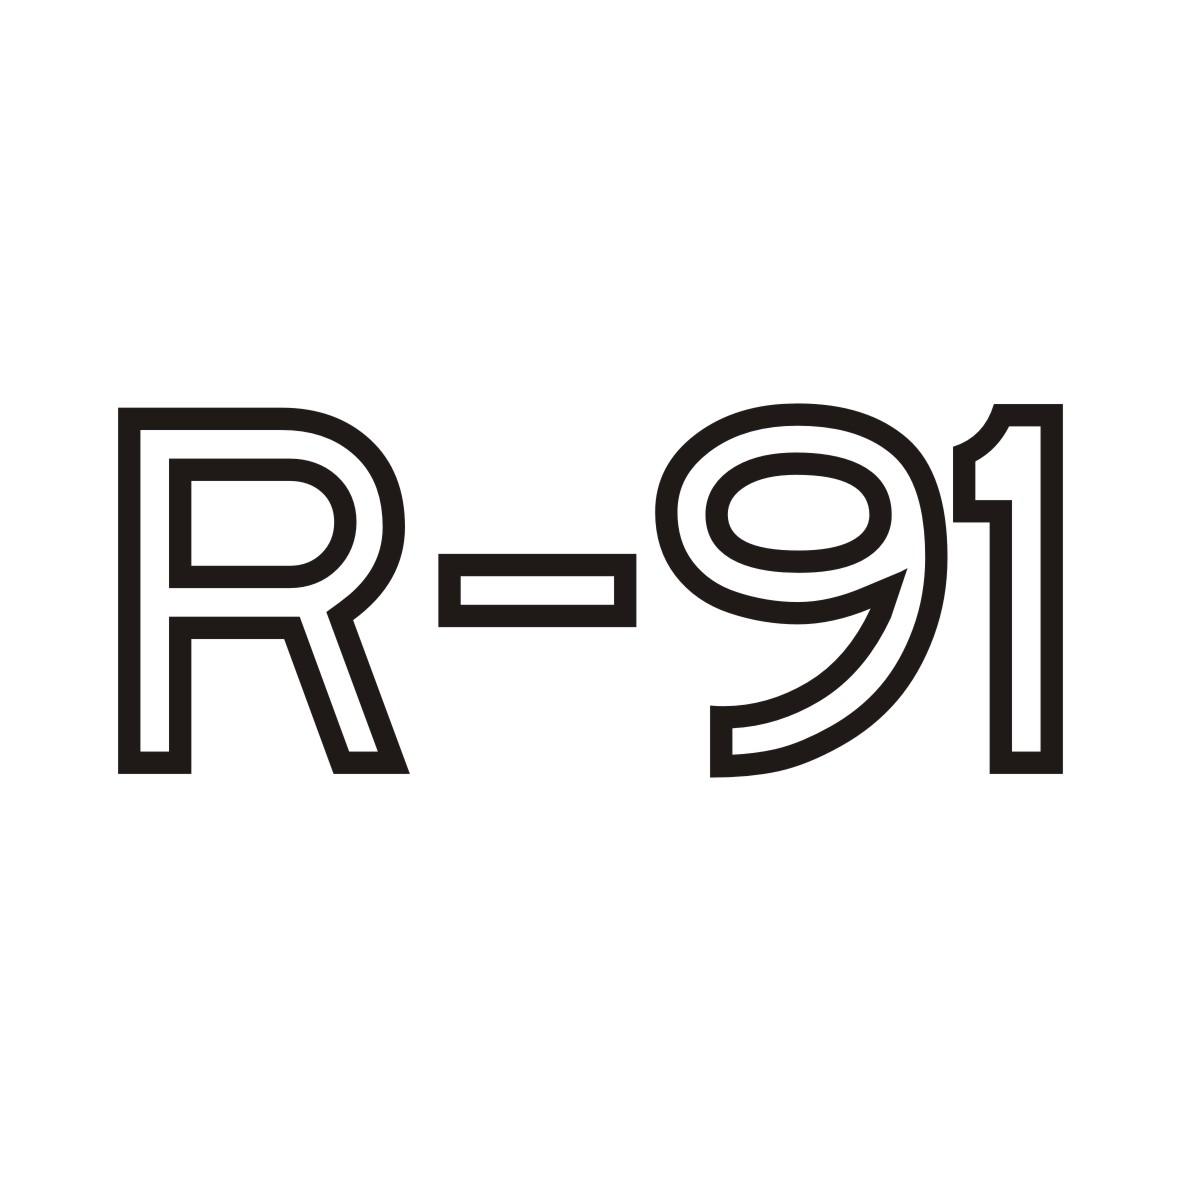 R-91